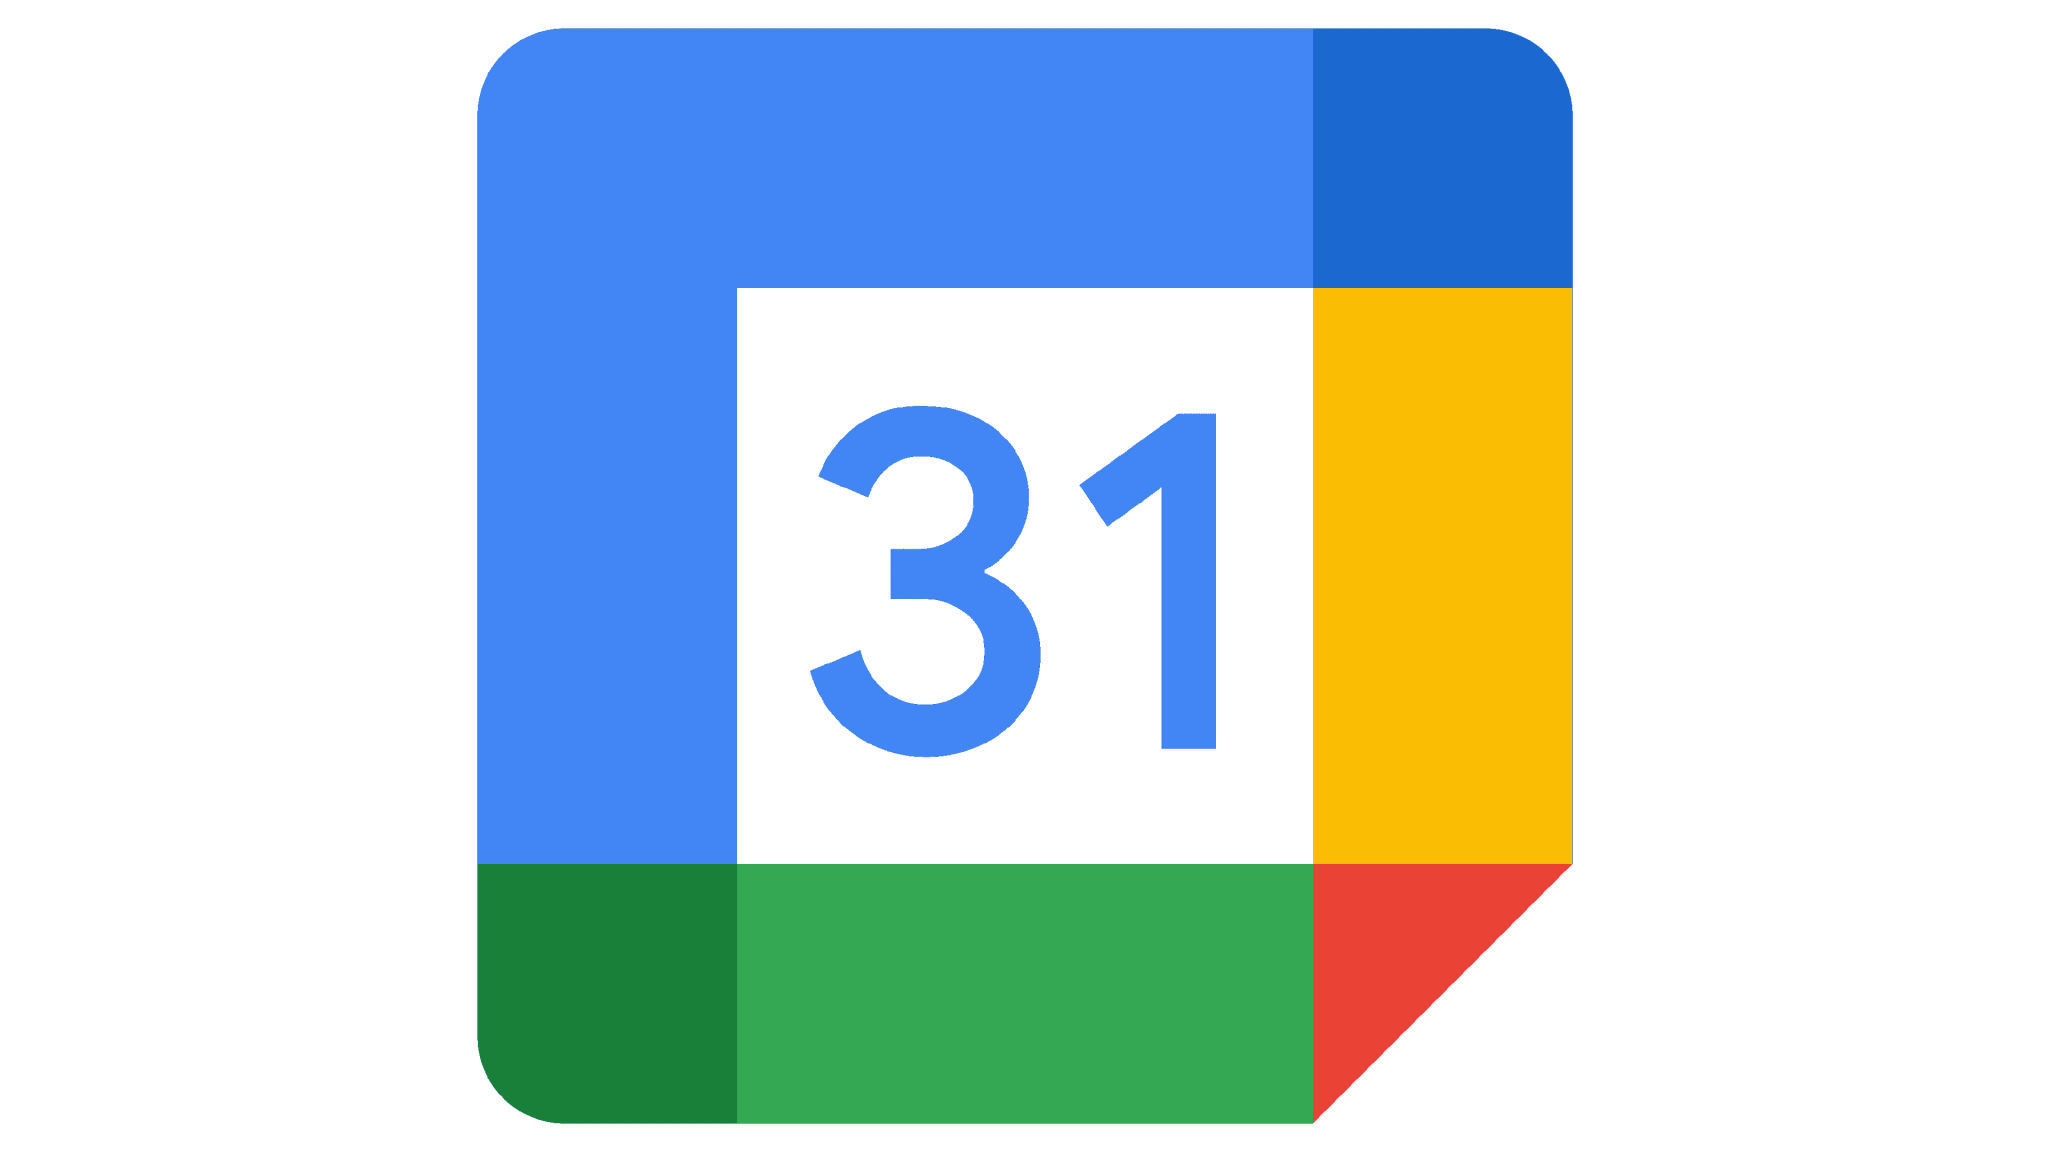 Google Календарь объявил об улучшенной совместимости с Outlook